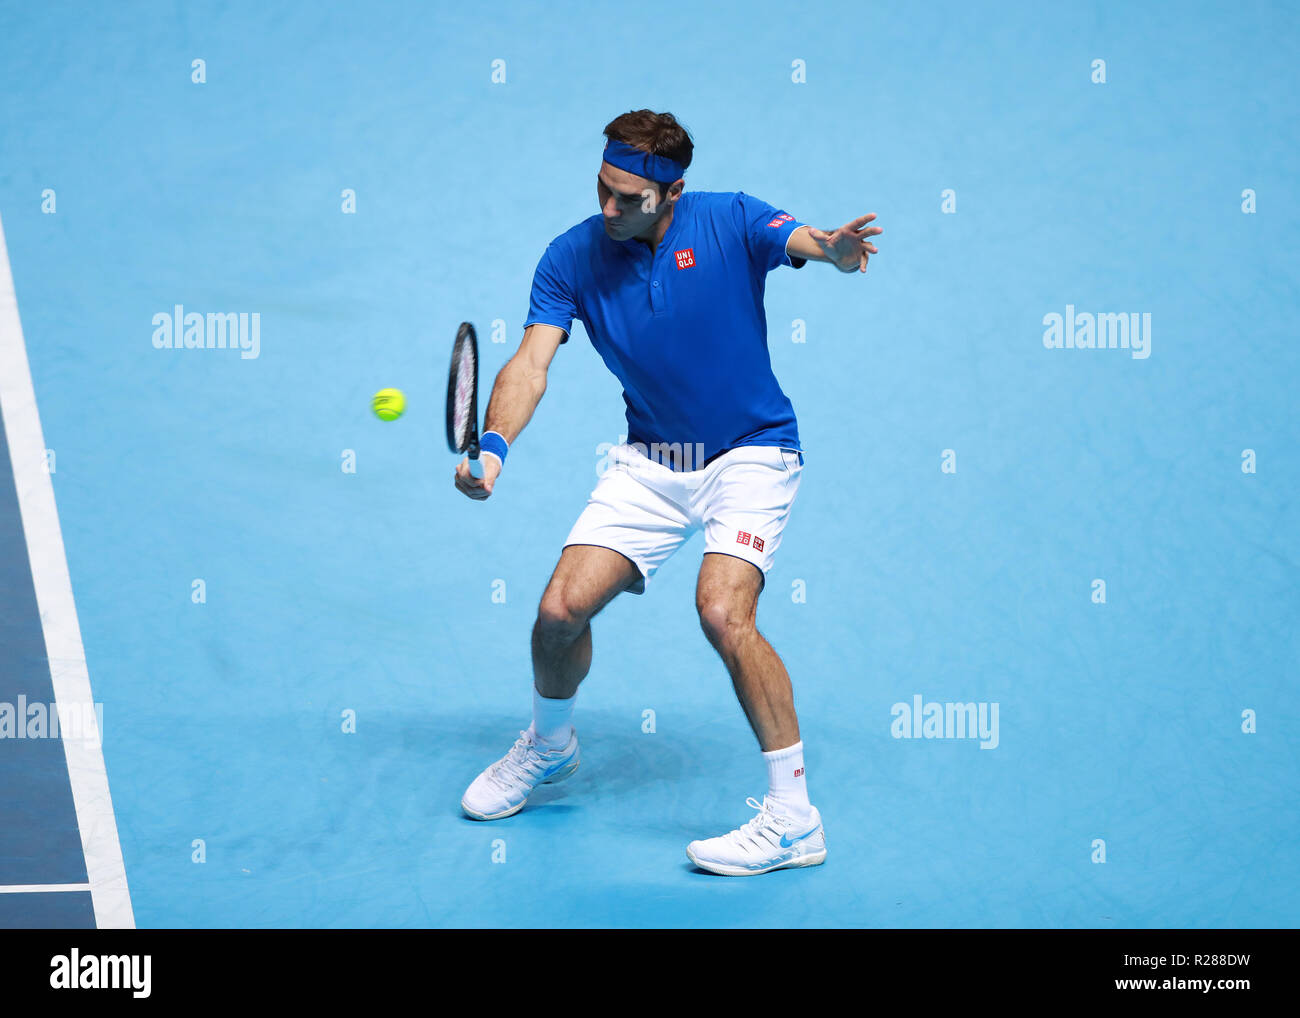 17 novembre 2018, O2 Arena, London, England ; Nitto ATP Tennis Finale, Roger Federer (SUI) avec un tir du revers dans son jeu contre Alexander Zverev (GER) Banque D'Images